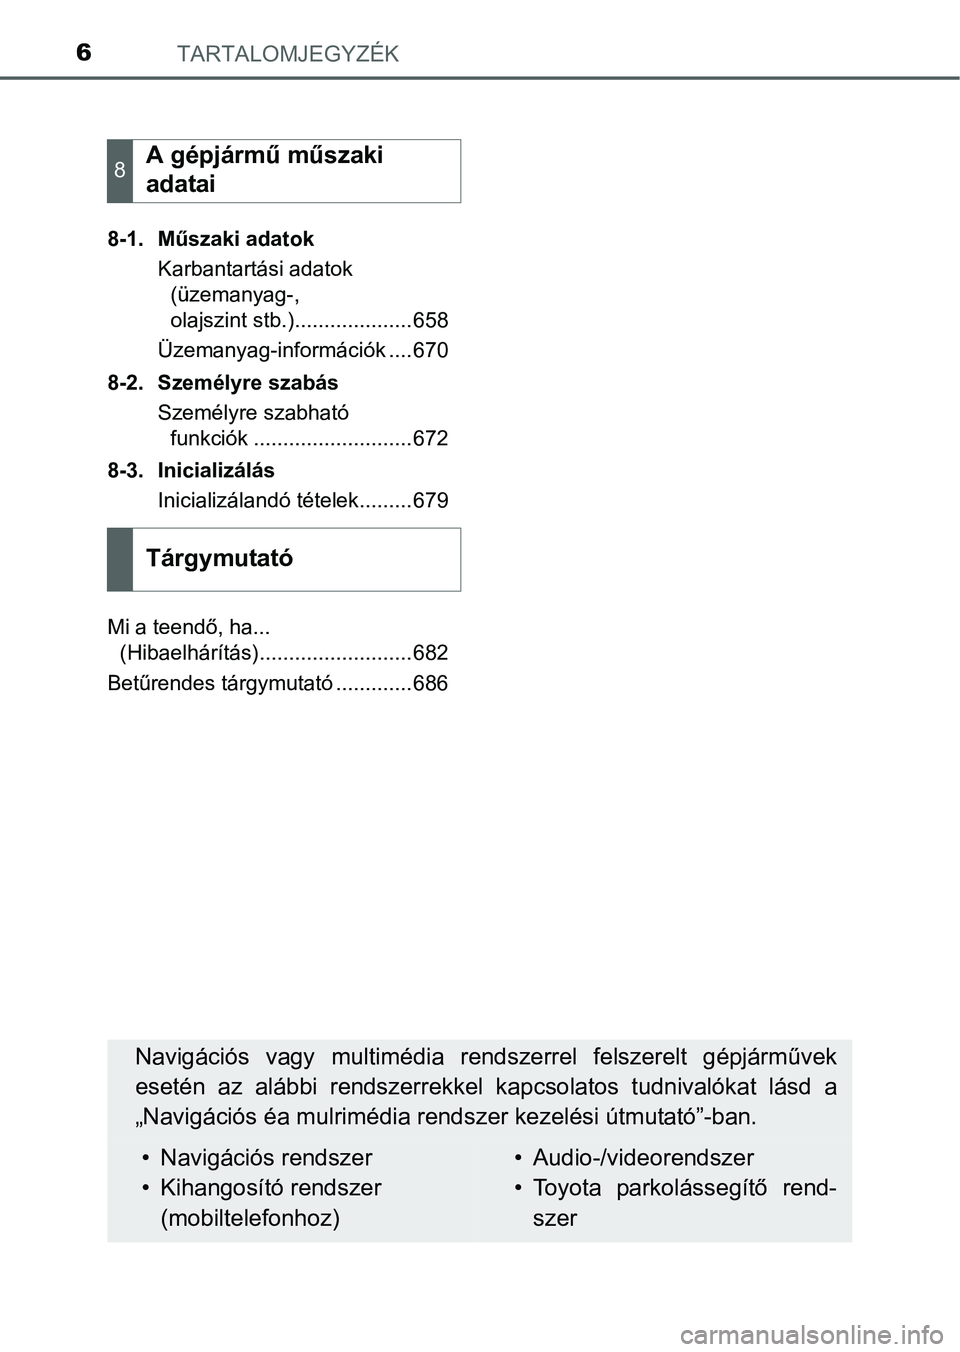 TOYOTA PRIUS 2015  Kezelési útmutató (in Hungarian) TARTALOMJEGYZÉK6
8-1. Műszaki adatok
Karbantartási adatok 
(üzemanyag-, 
olajszint stb.)....................658
Üzemanyag-információk ....670
8-2. Személyre szabás
Személyre szabható 
funkc